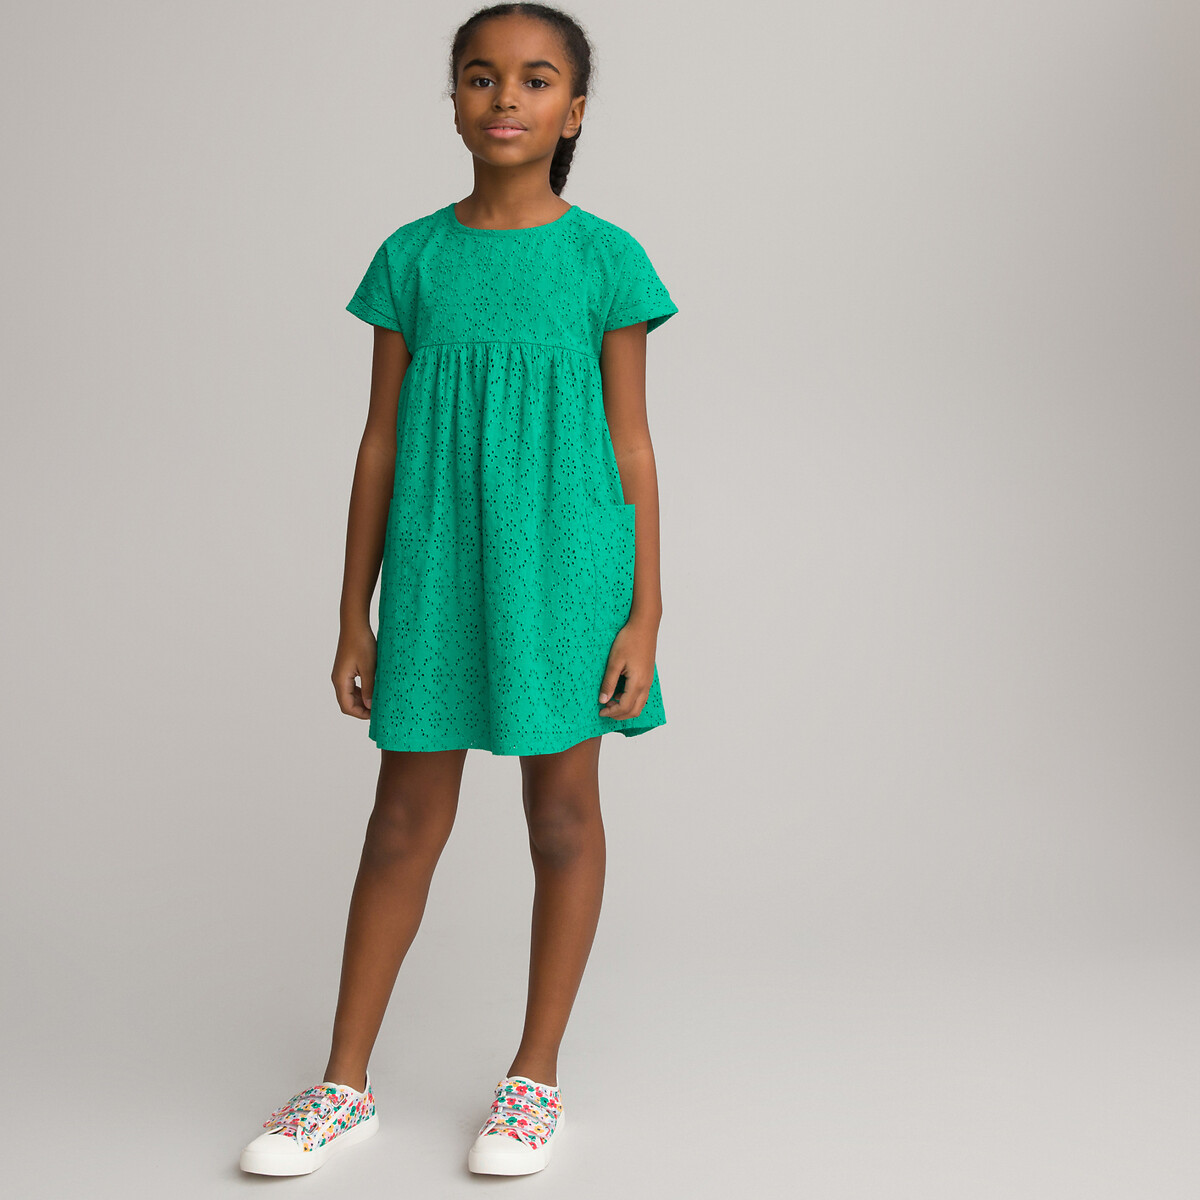 Платье С короткими рукавами и английской вышивкой 12 лет -150 см зеленый